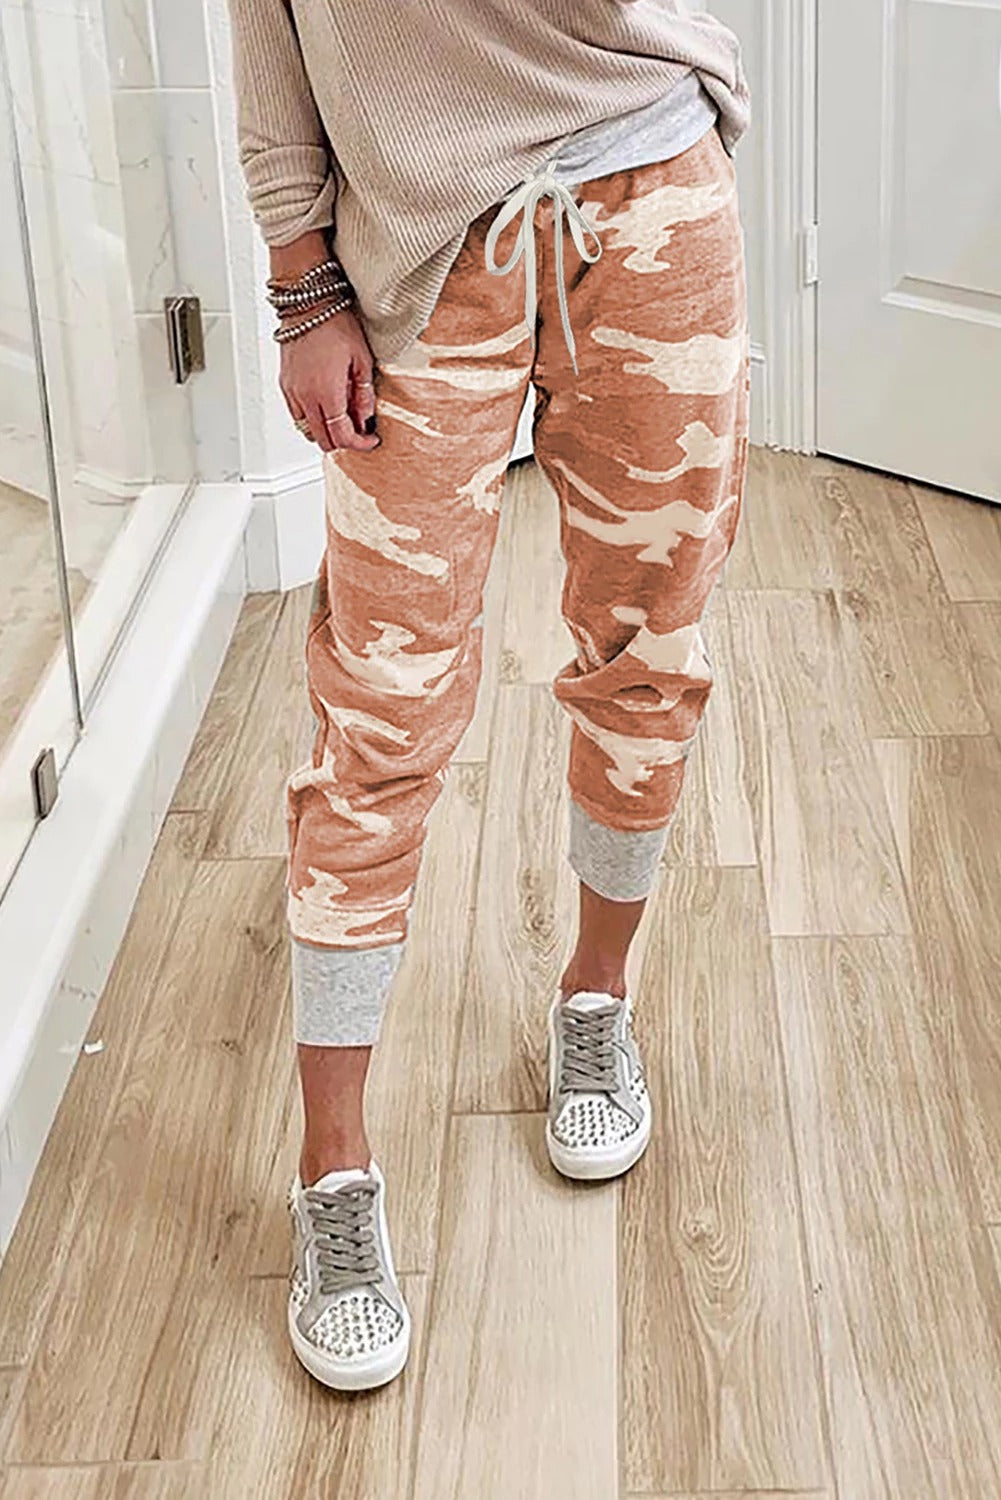 Pantalon de Sport Femme Tricot Imprime Camouflage Orange